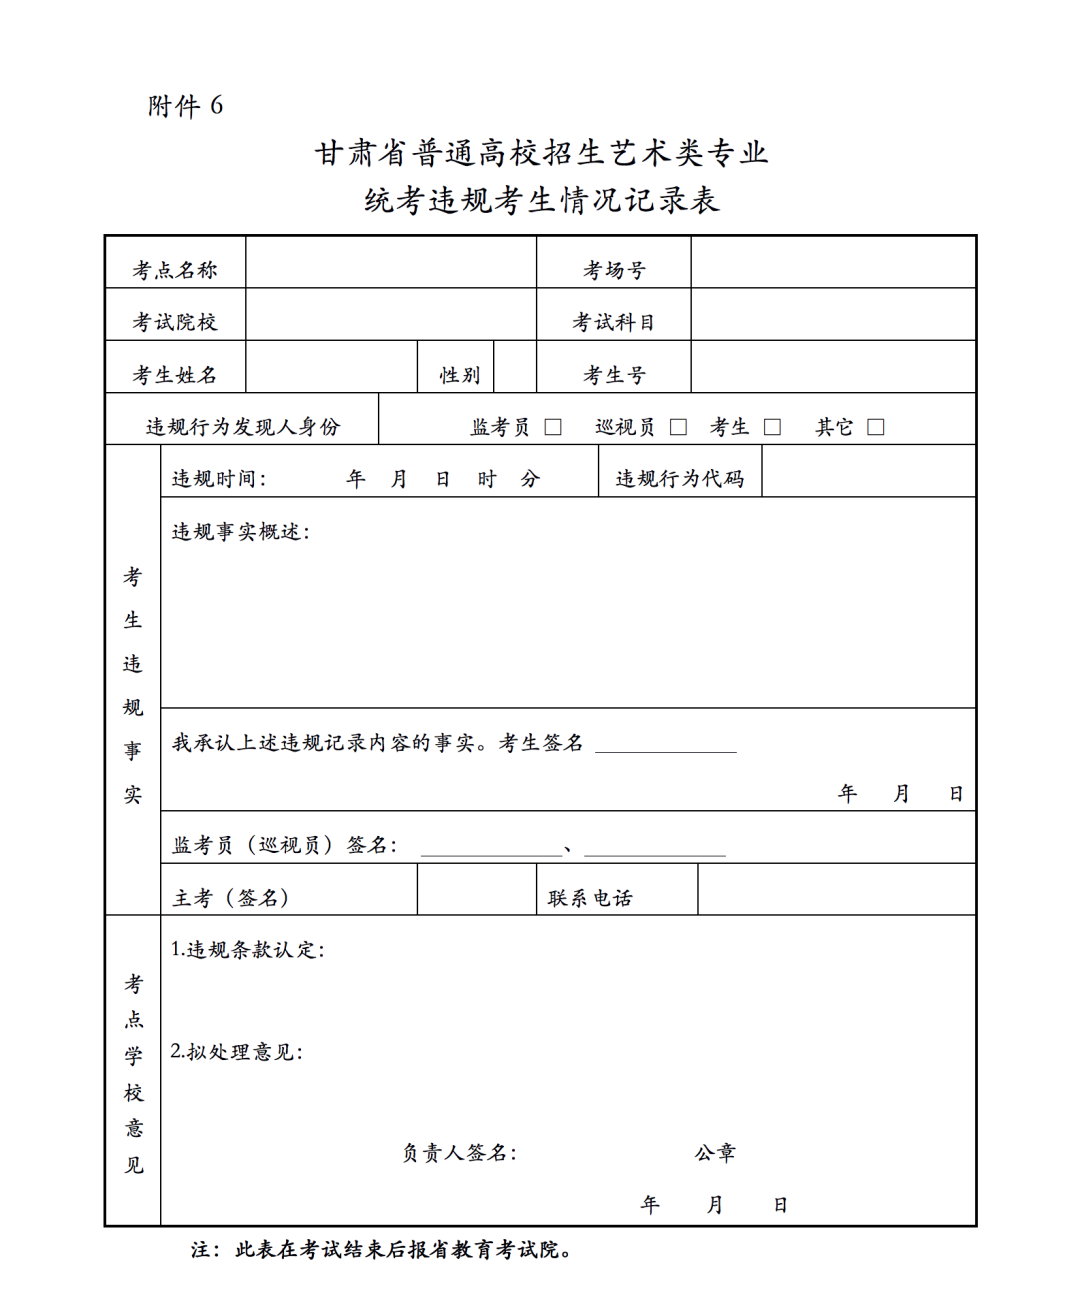 关于做好2021年甘肃省普通高等学校招生艺术类专业统一考试工作的通知